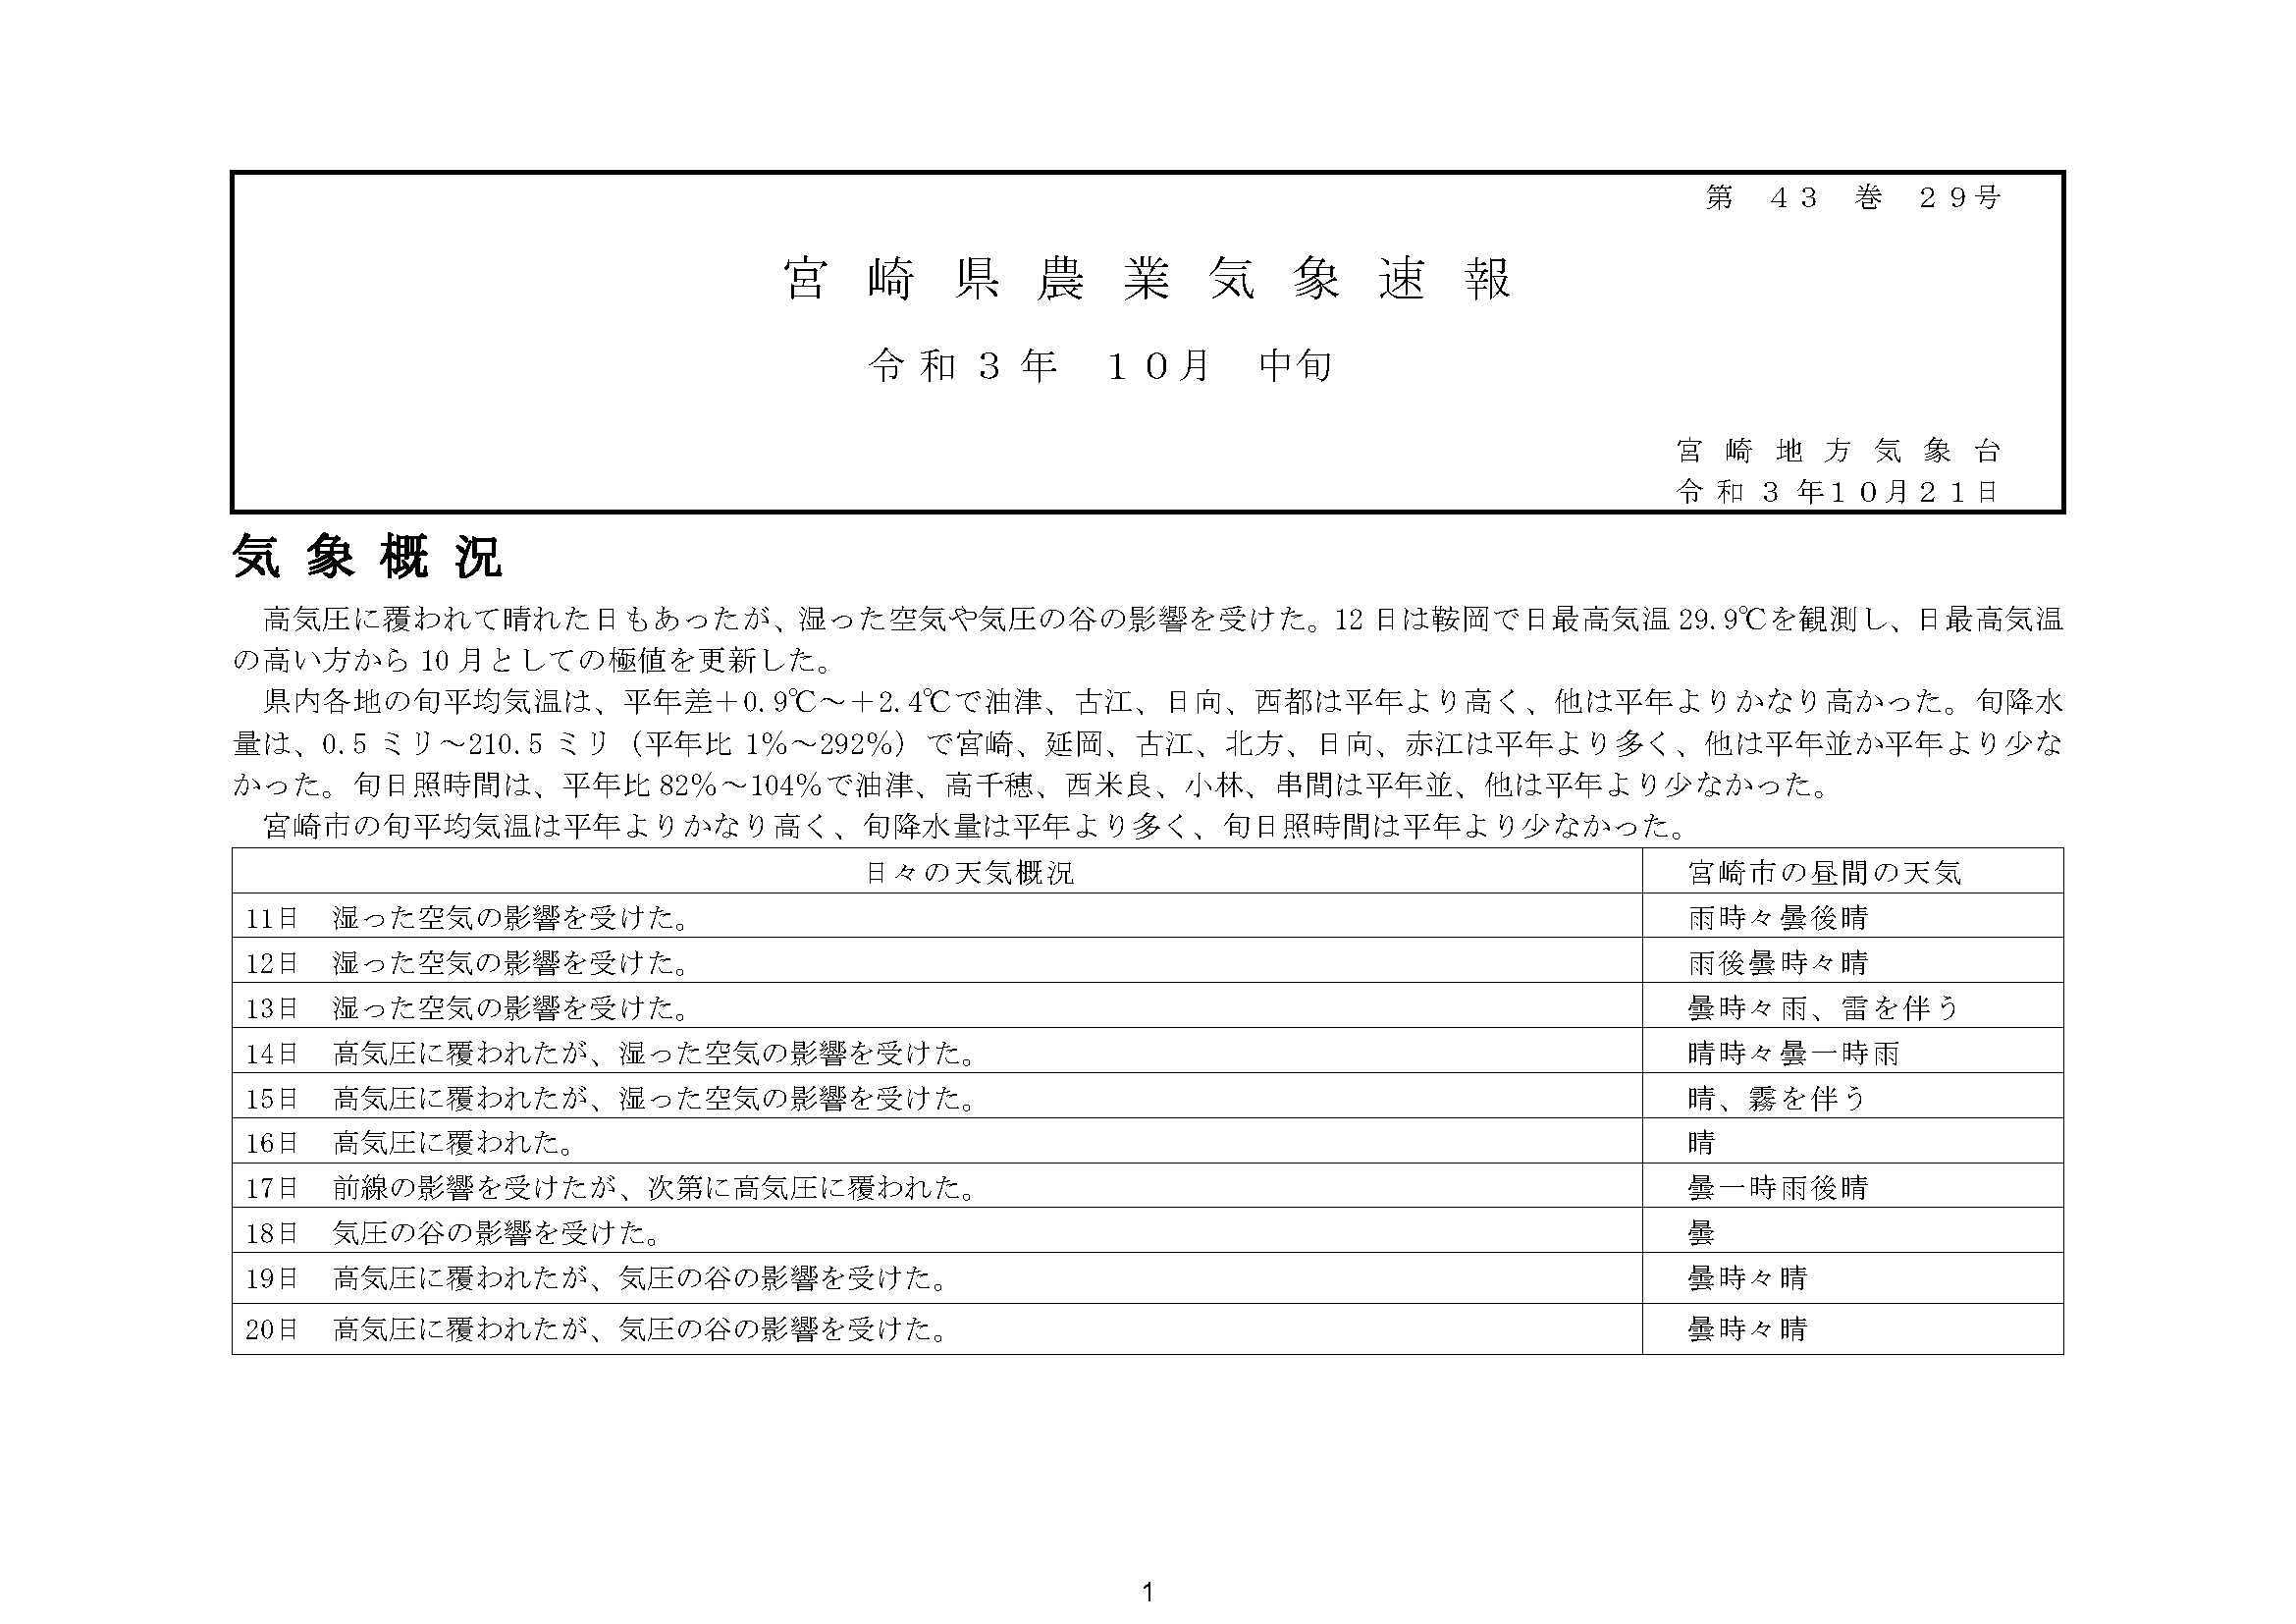 宮崎県農業気象速報令和3年9月中旬PDF